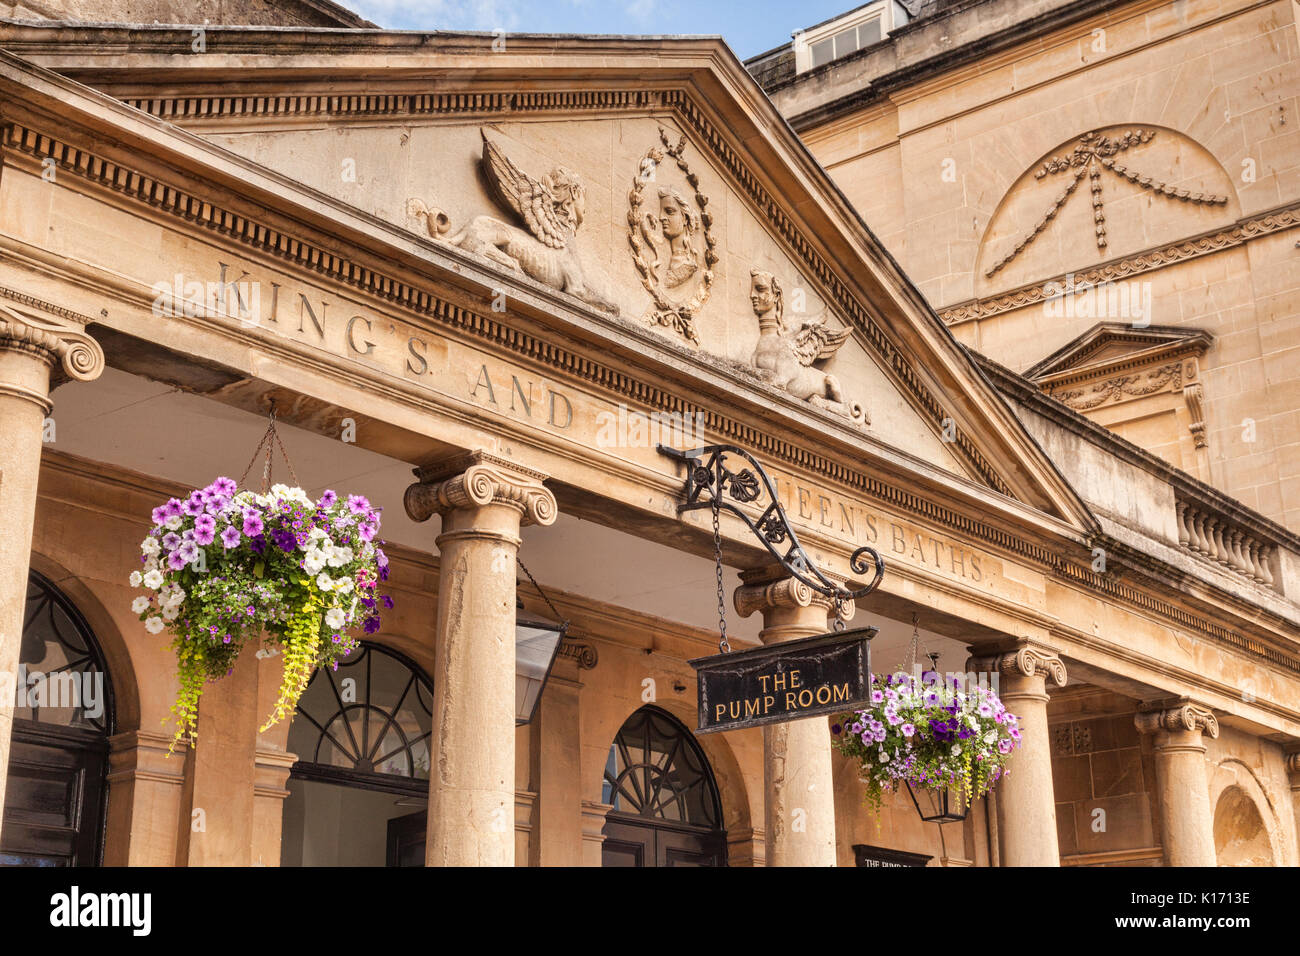 8 Juillet 2017 : Bath, Somerset, England, UK - la salle des pompes, un détail de la façade de l'immeuble. Banque D'Images